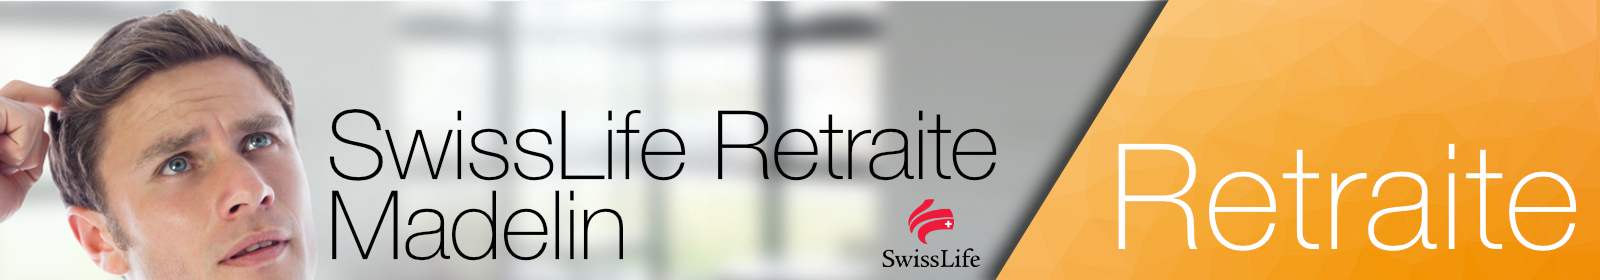 SwissLife RetraiteAssurance complémentaire retraite Madelin